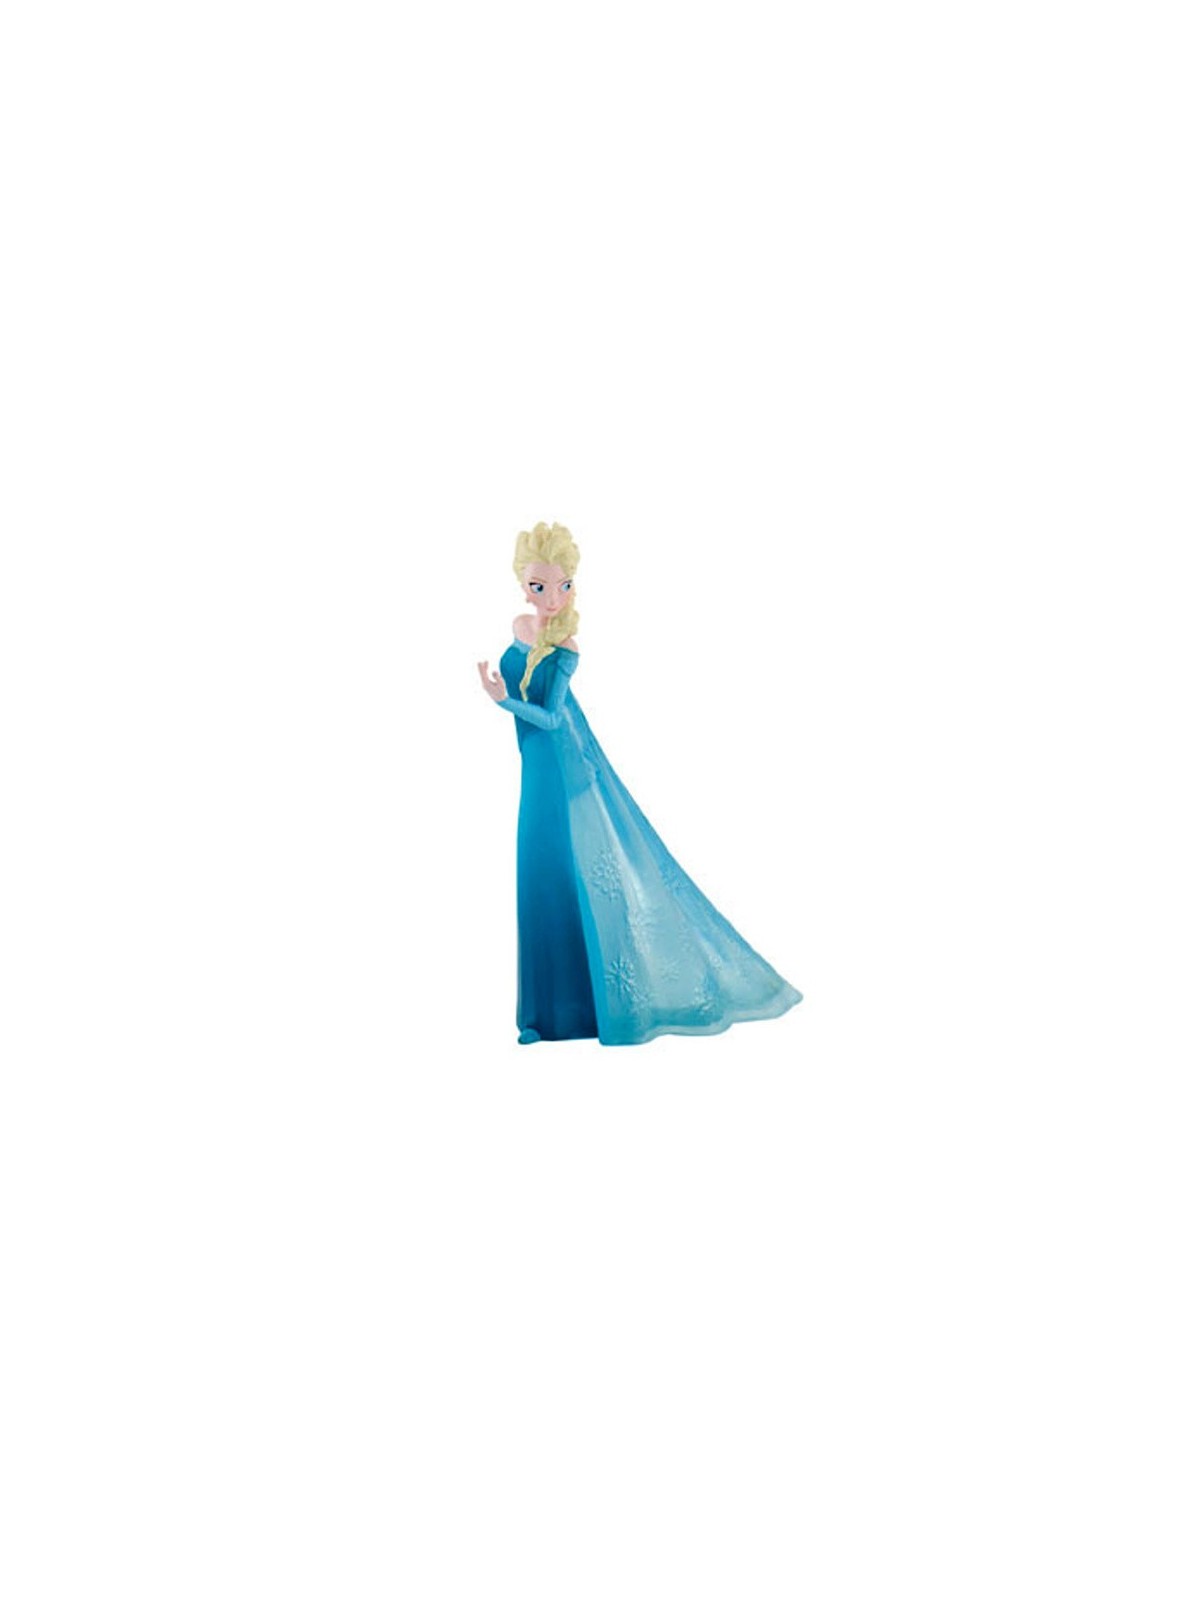 Dekorative Figur - Elsa